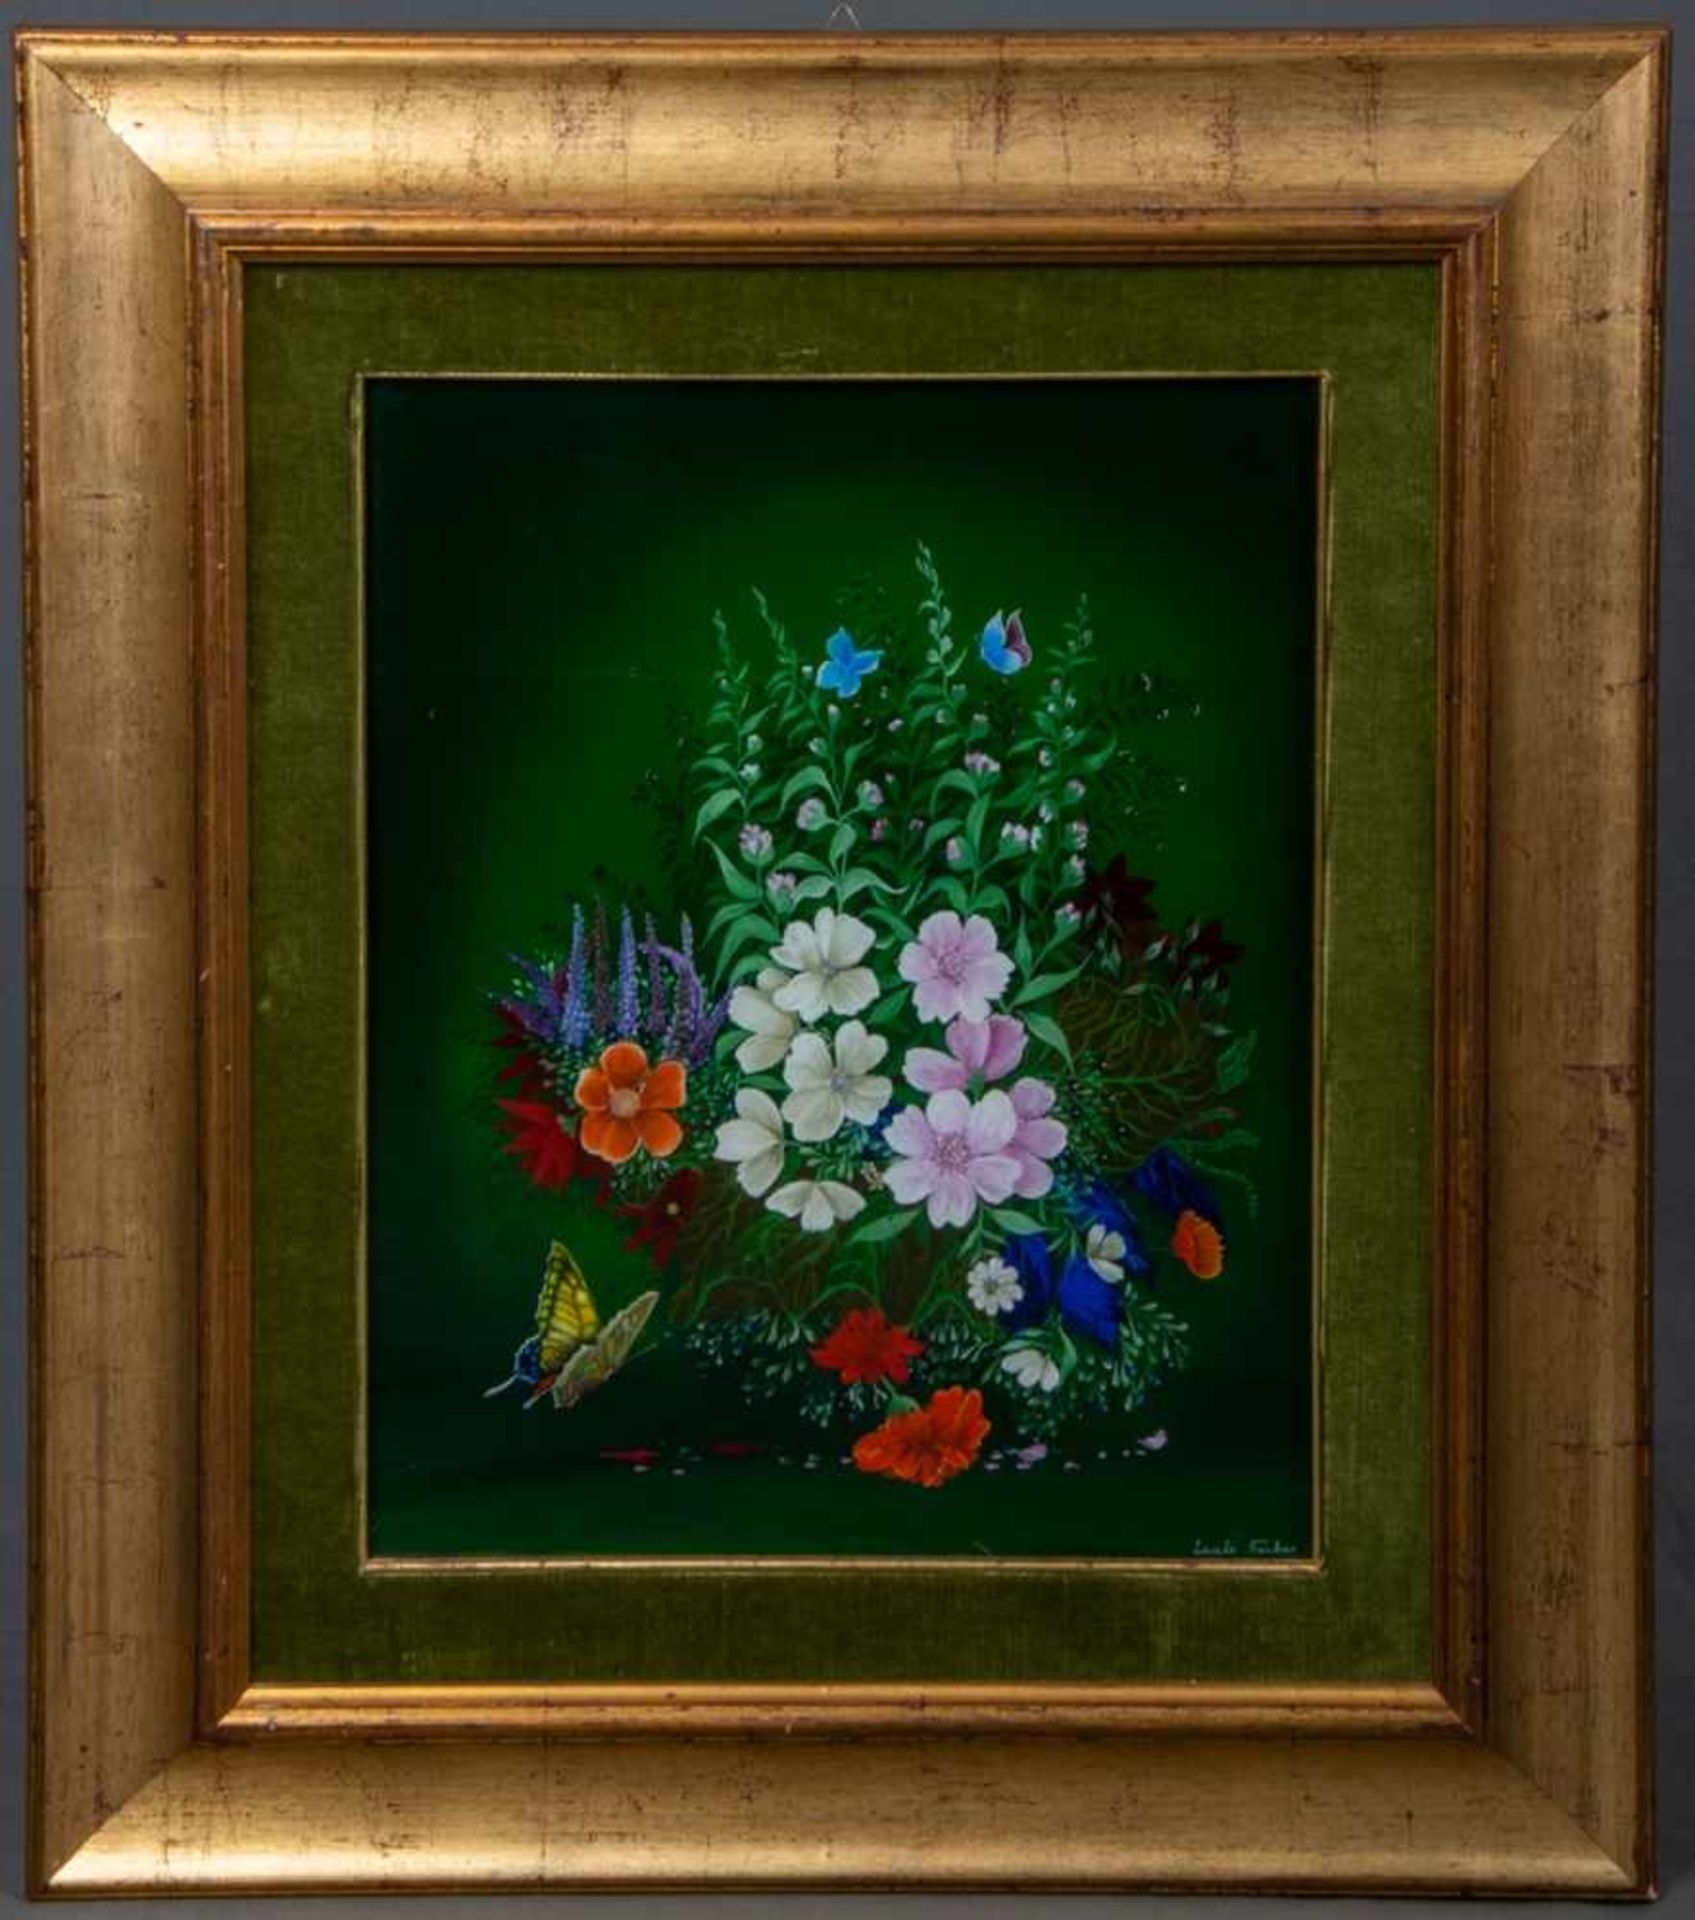 "Blühendes Blumenbeet mit nahendem Schmetterling" - dekorative, farbenfrohe Hinterglasmalerei des